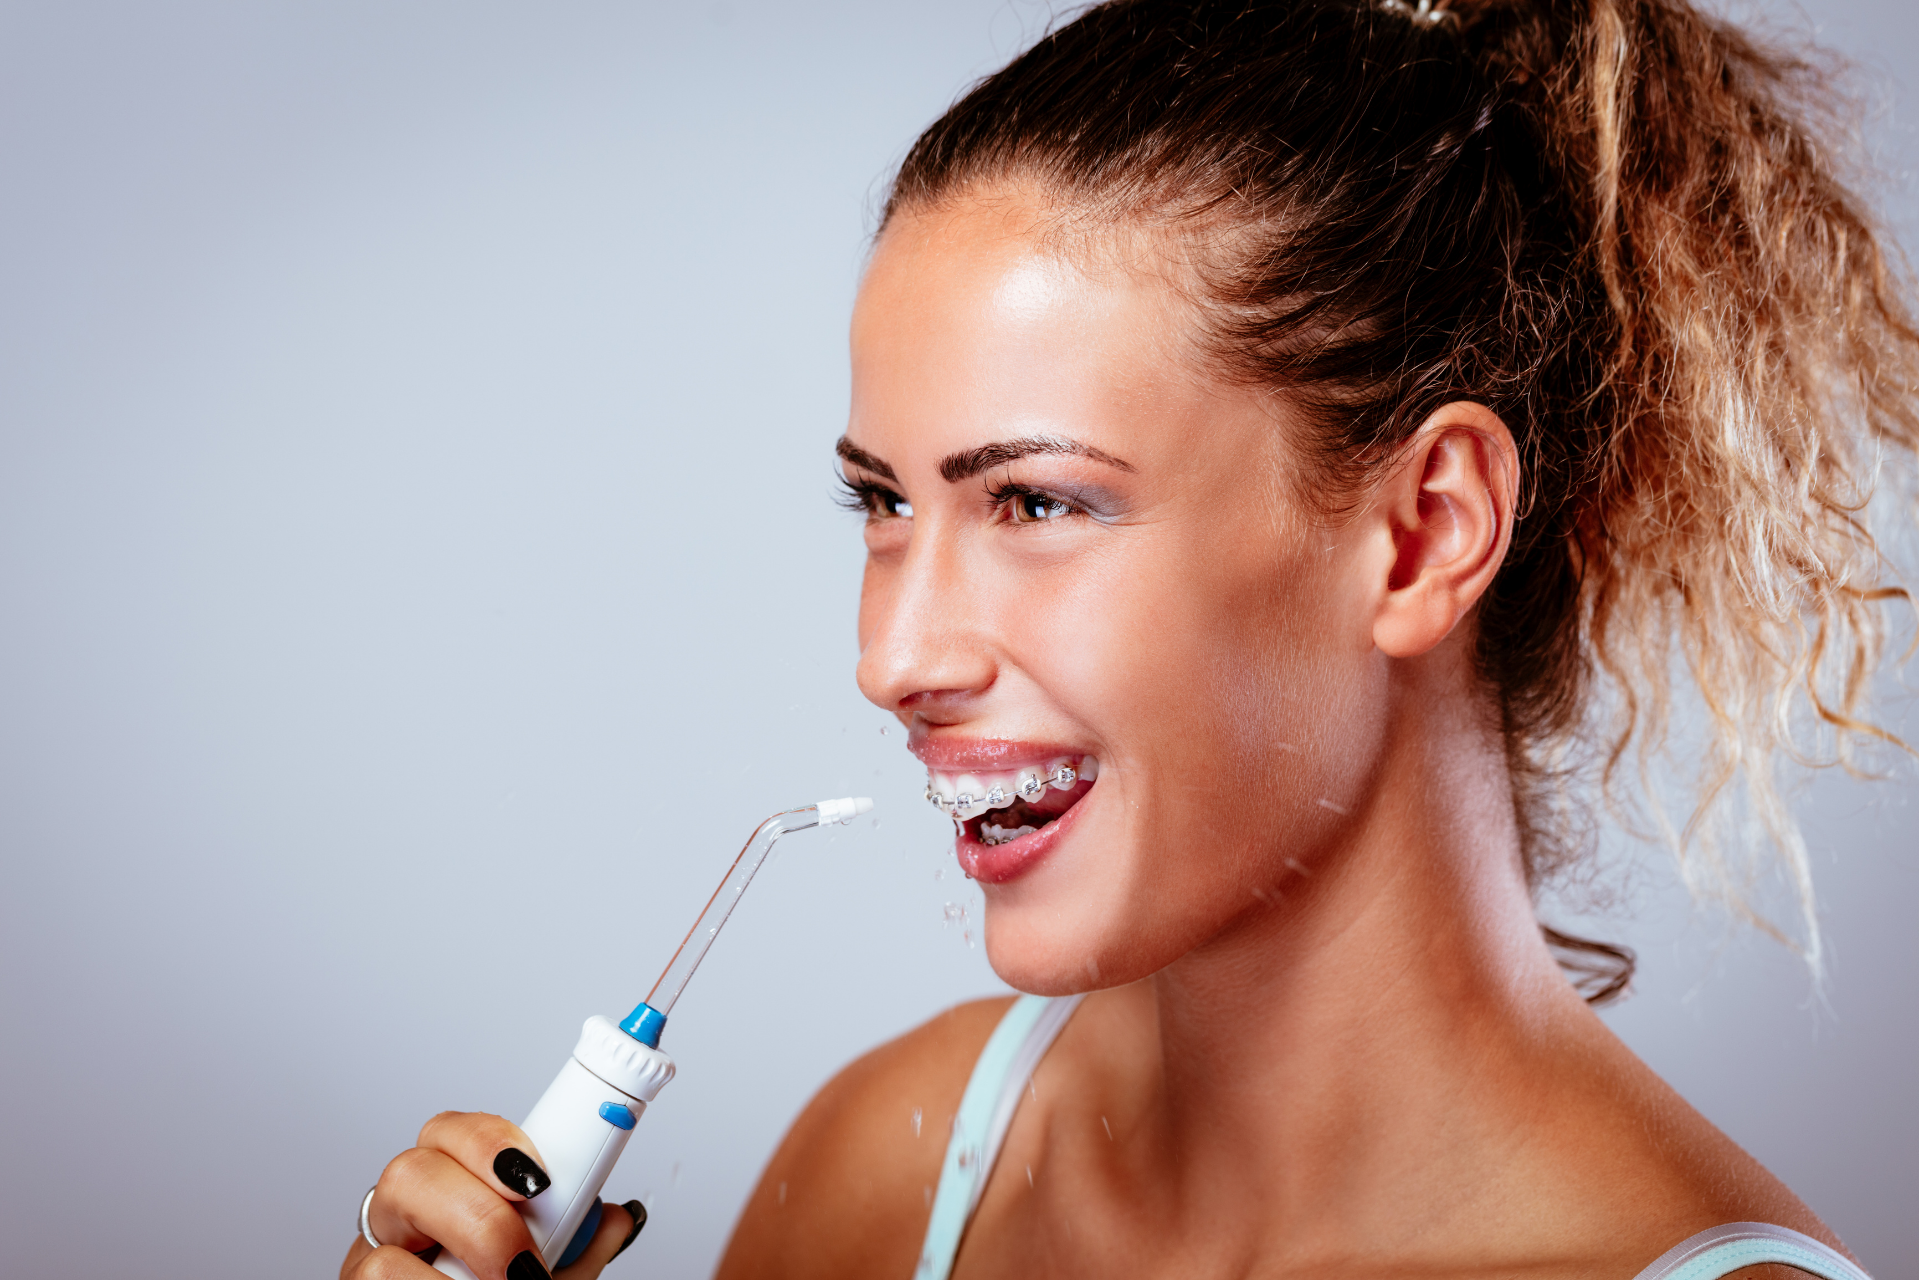 Woman using water flosser to clean teeth.